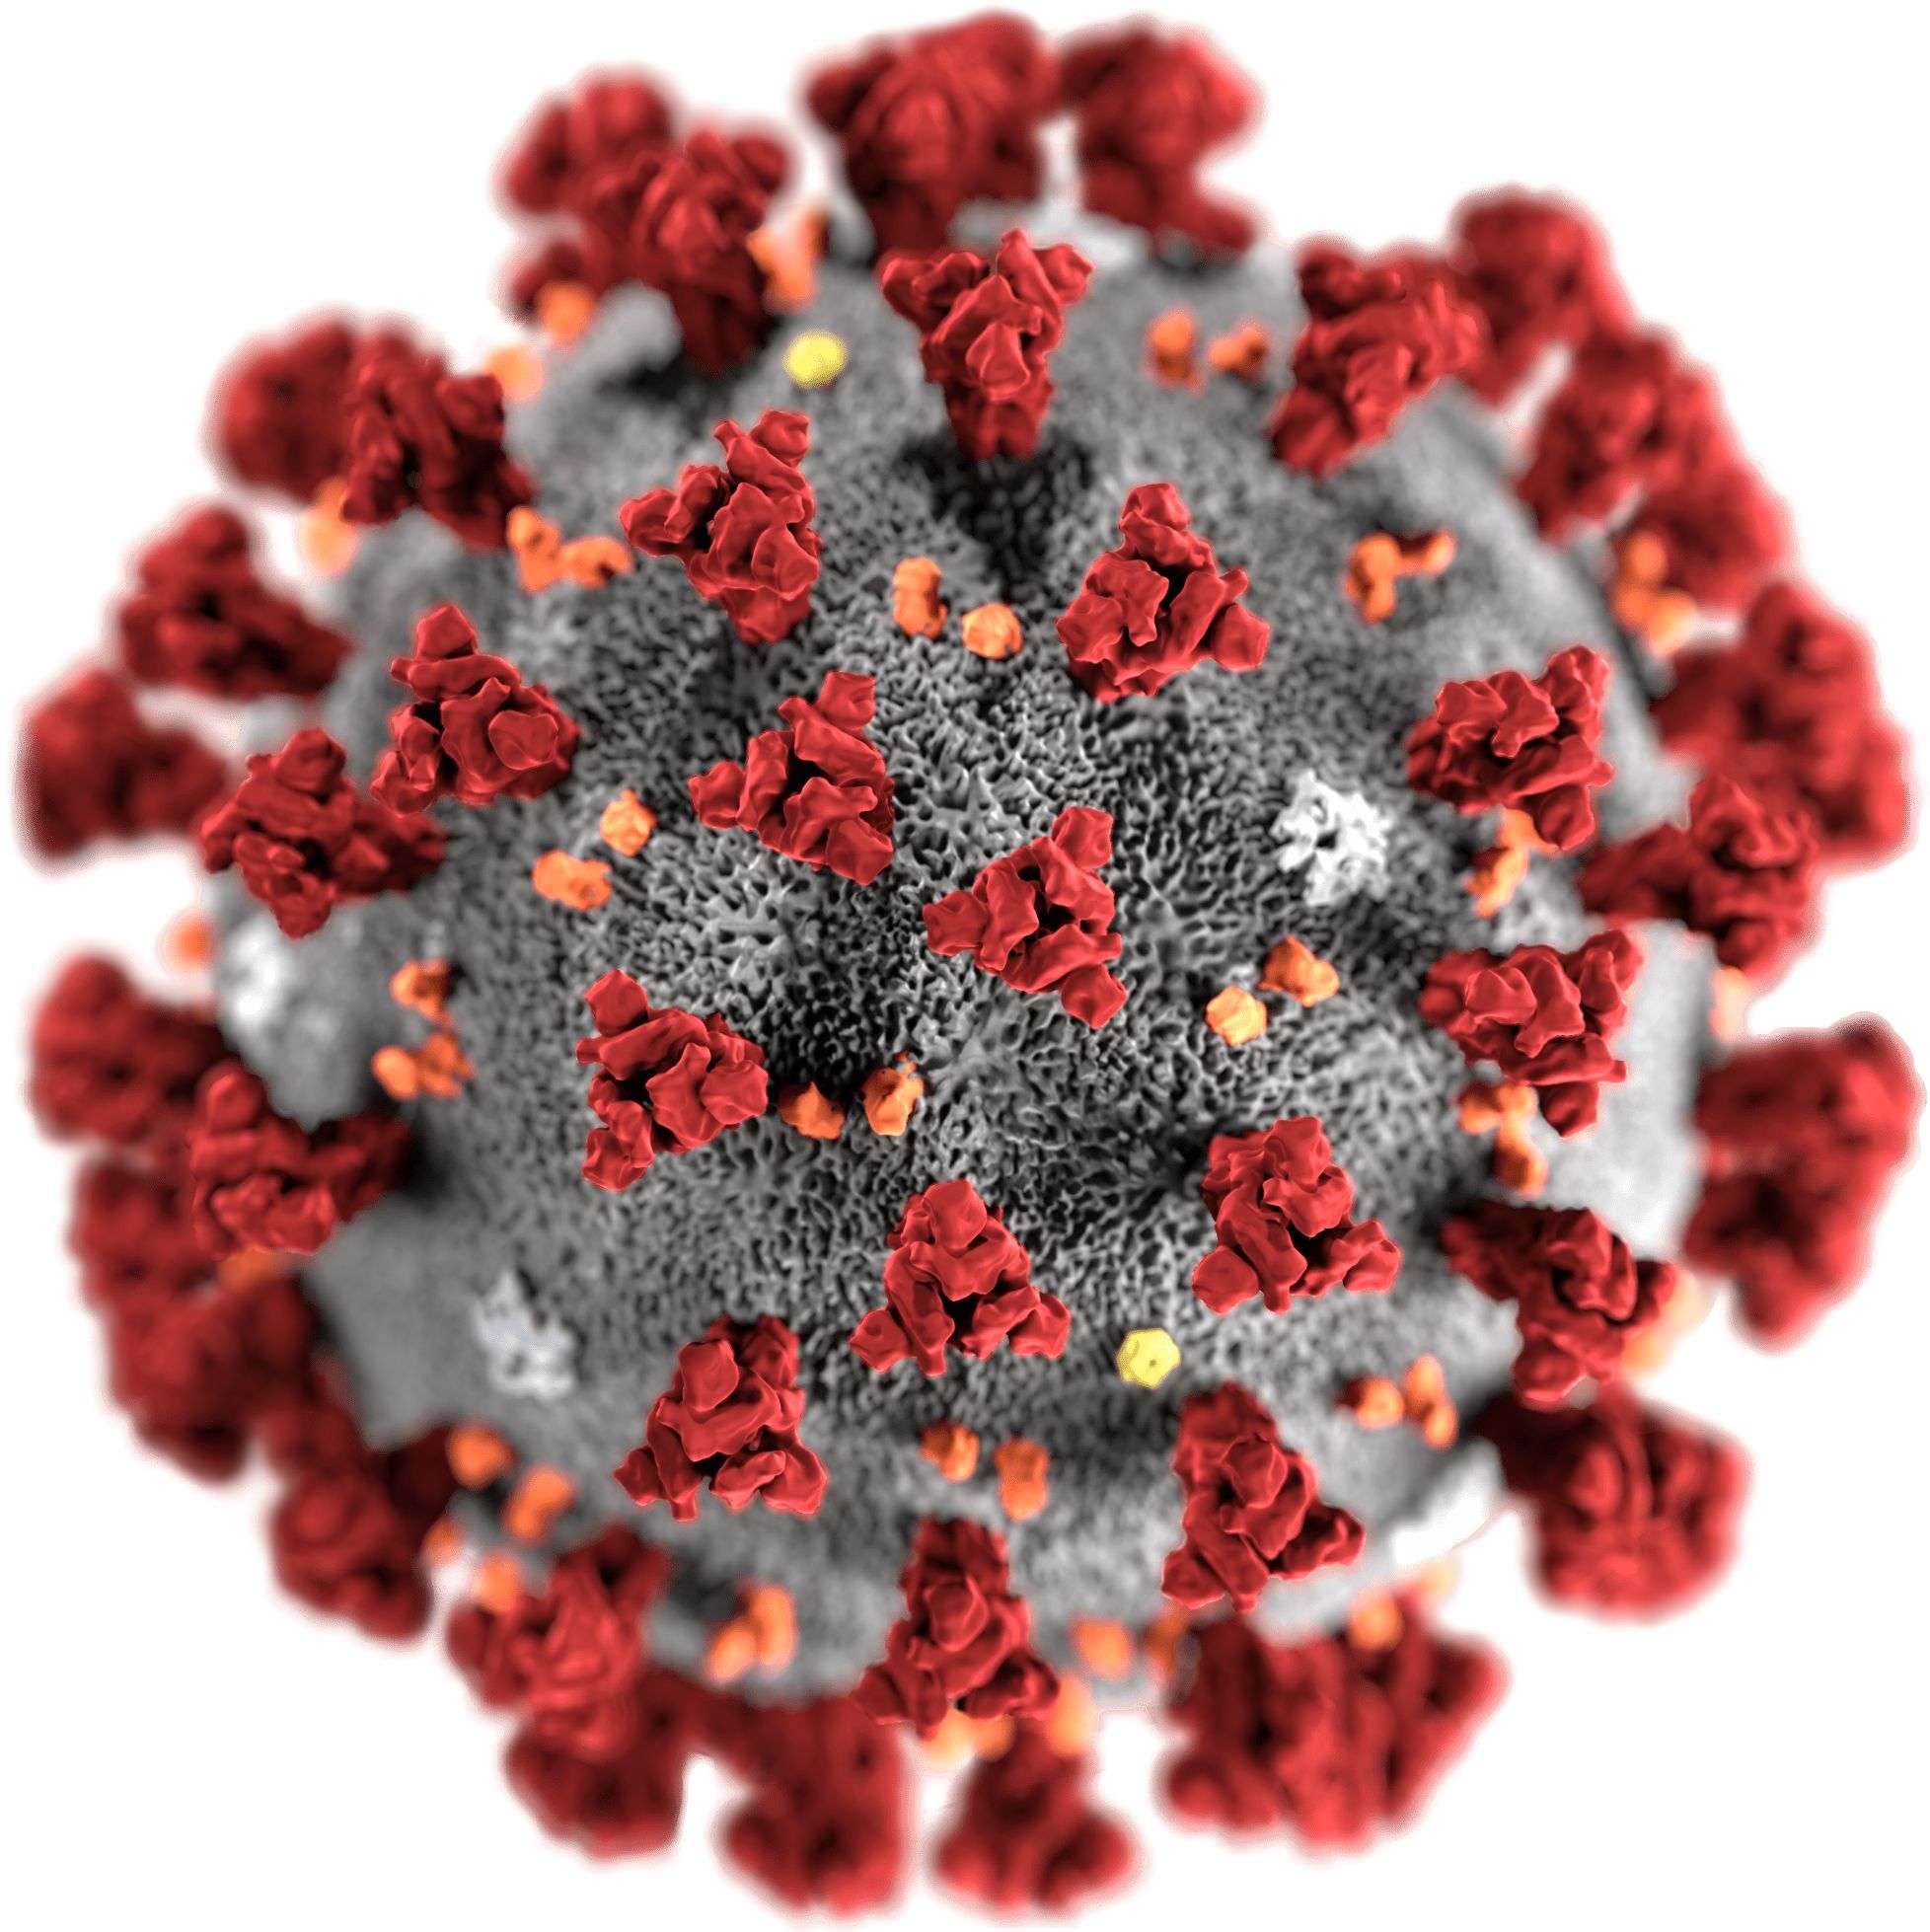 एमआइटी प्रोफेसर ने कोरोना वायरस के जटिल संरचना को संगीत से दिखाया